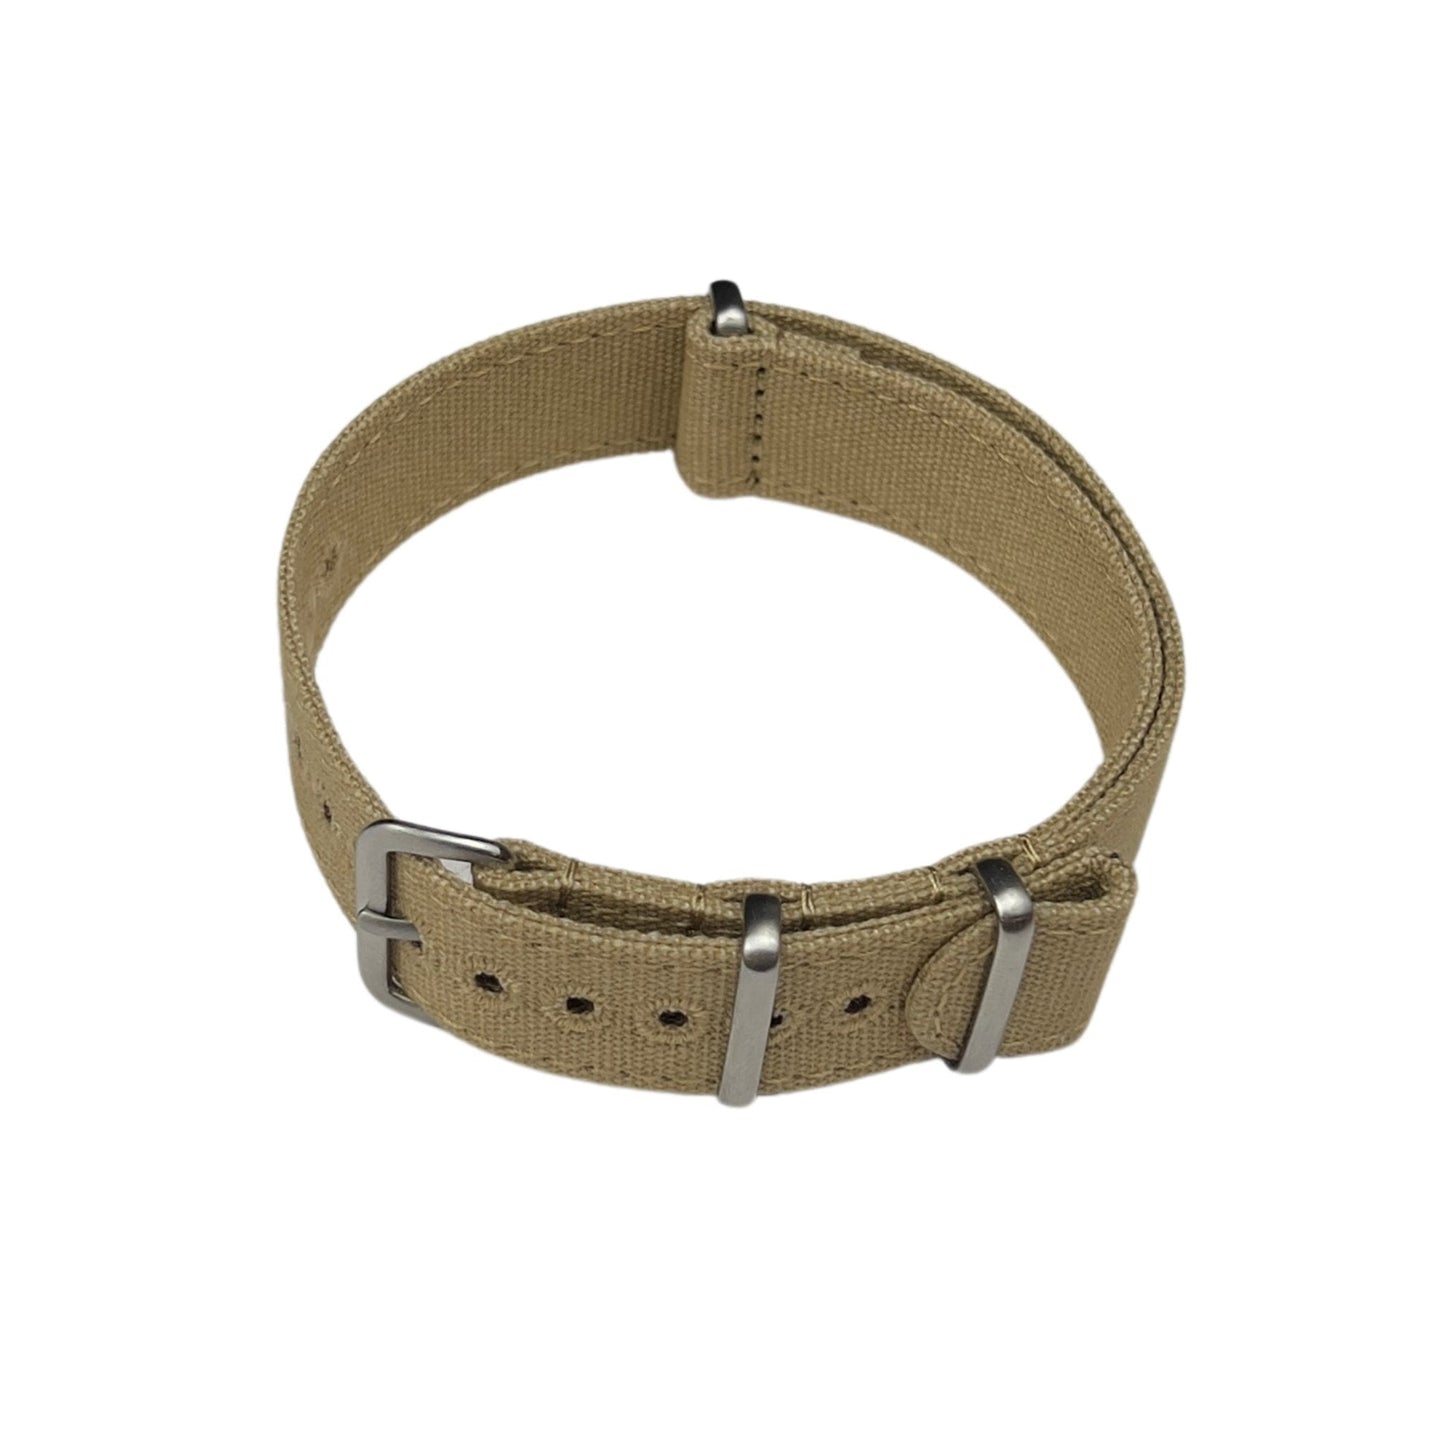 Bracelet montre Nato (toile militaire) - MONTRE A PAPY - Montre automatique seiko mod 18mmBeige